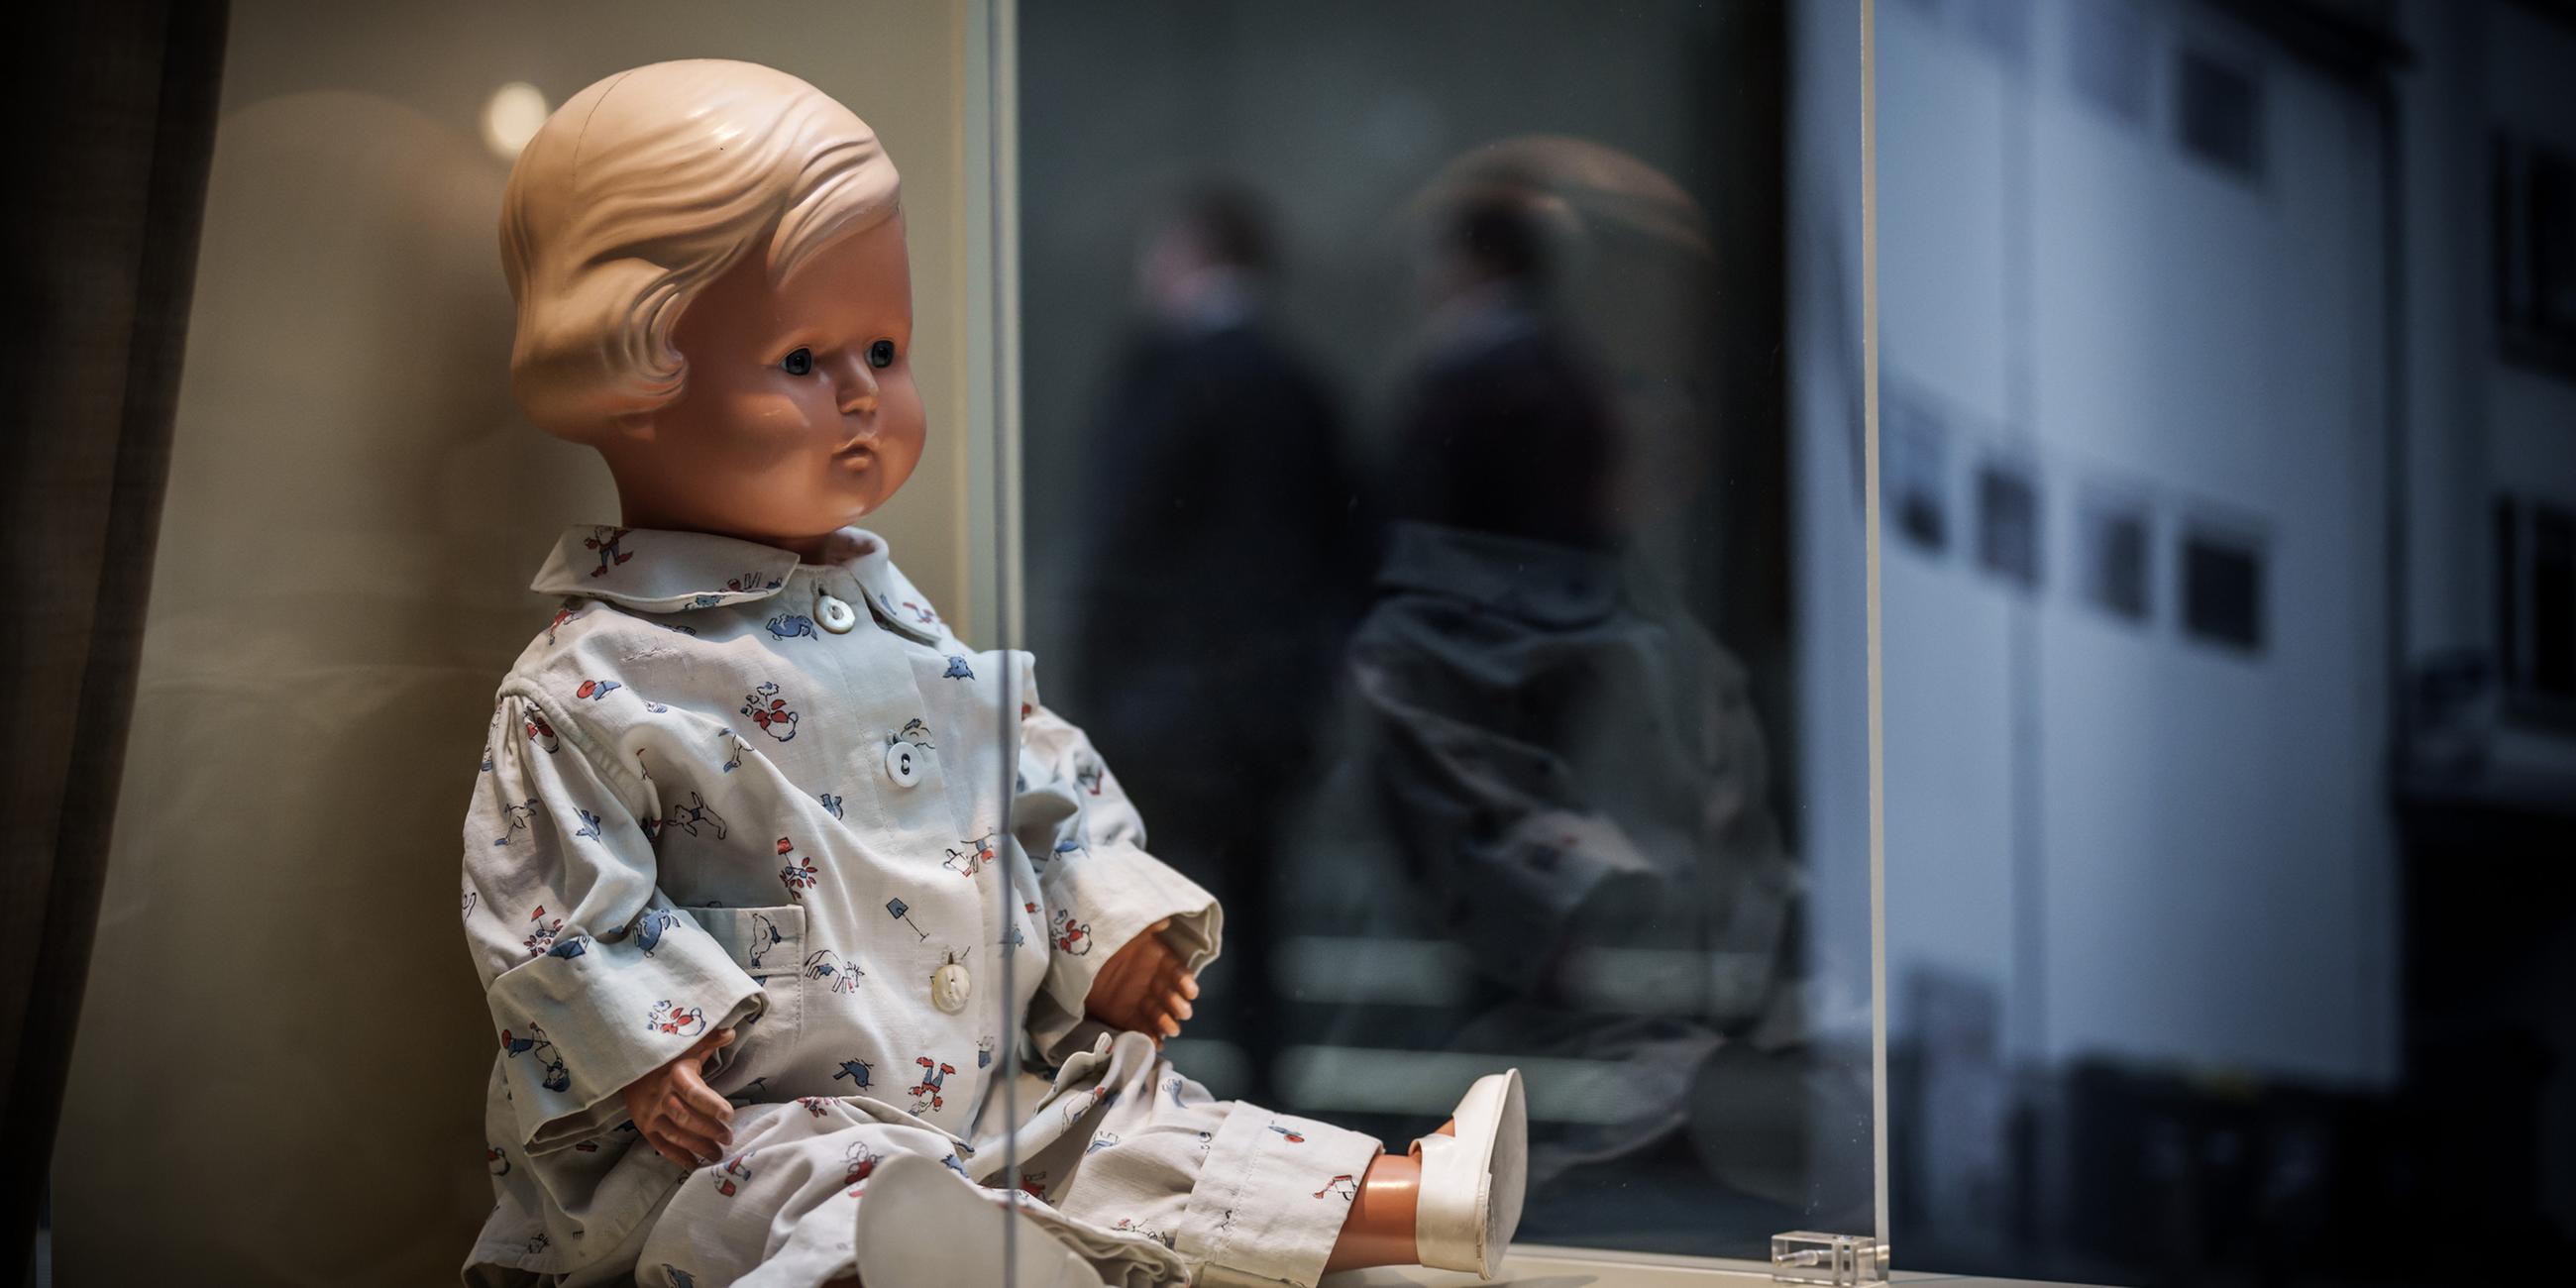 Puppe "Inge" von Lore Stern, bekleidet mit demselben Schlafanzug, den Lore in der Nacht des November-Pogroms trug